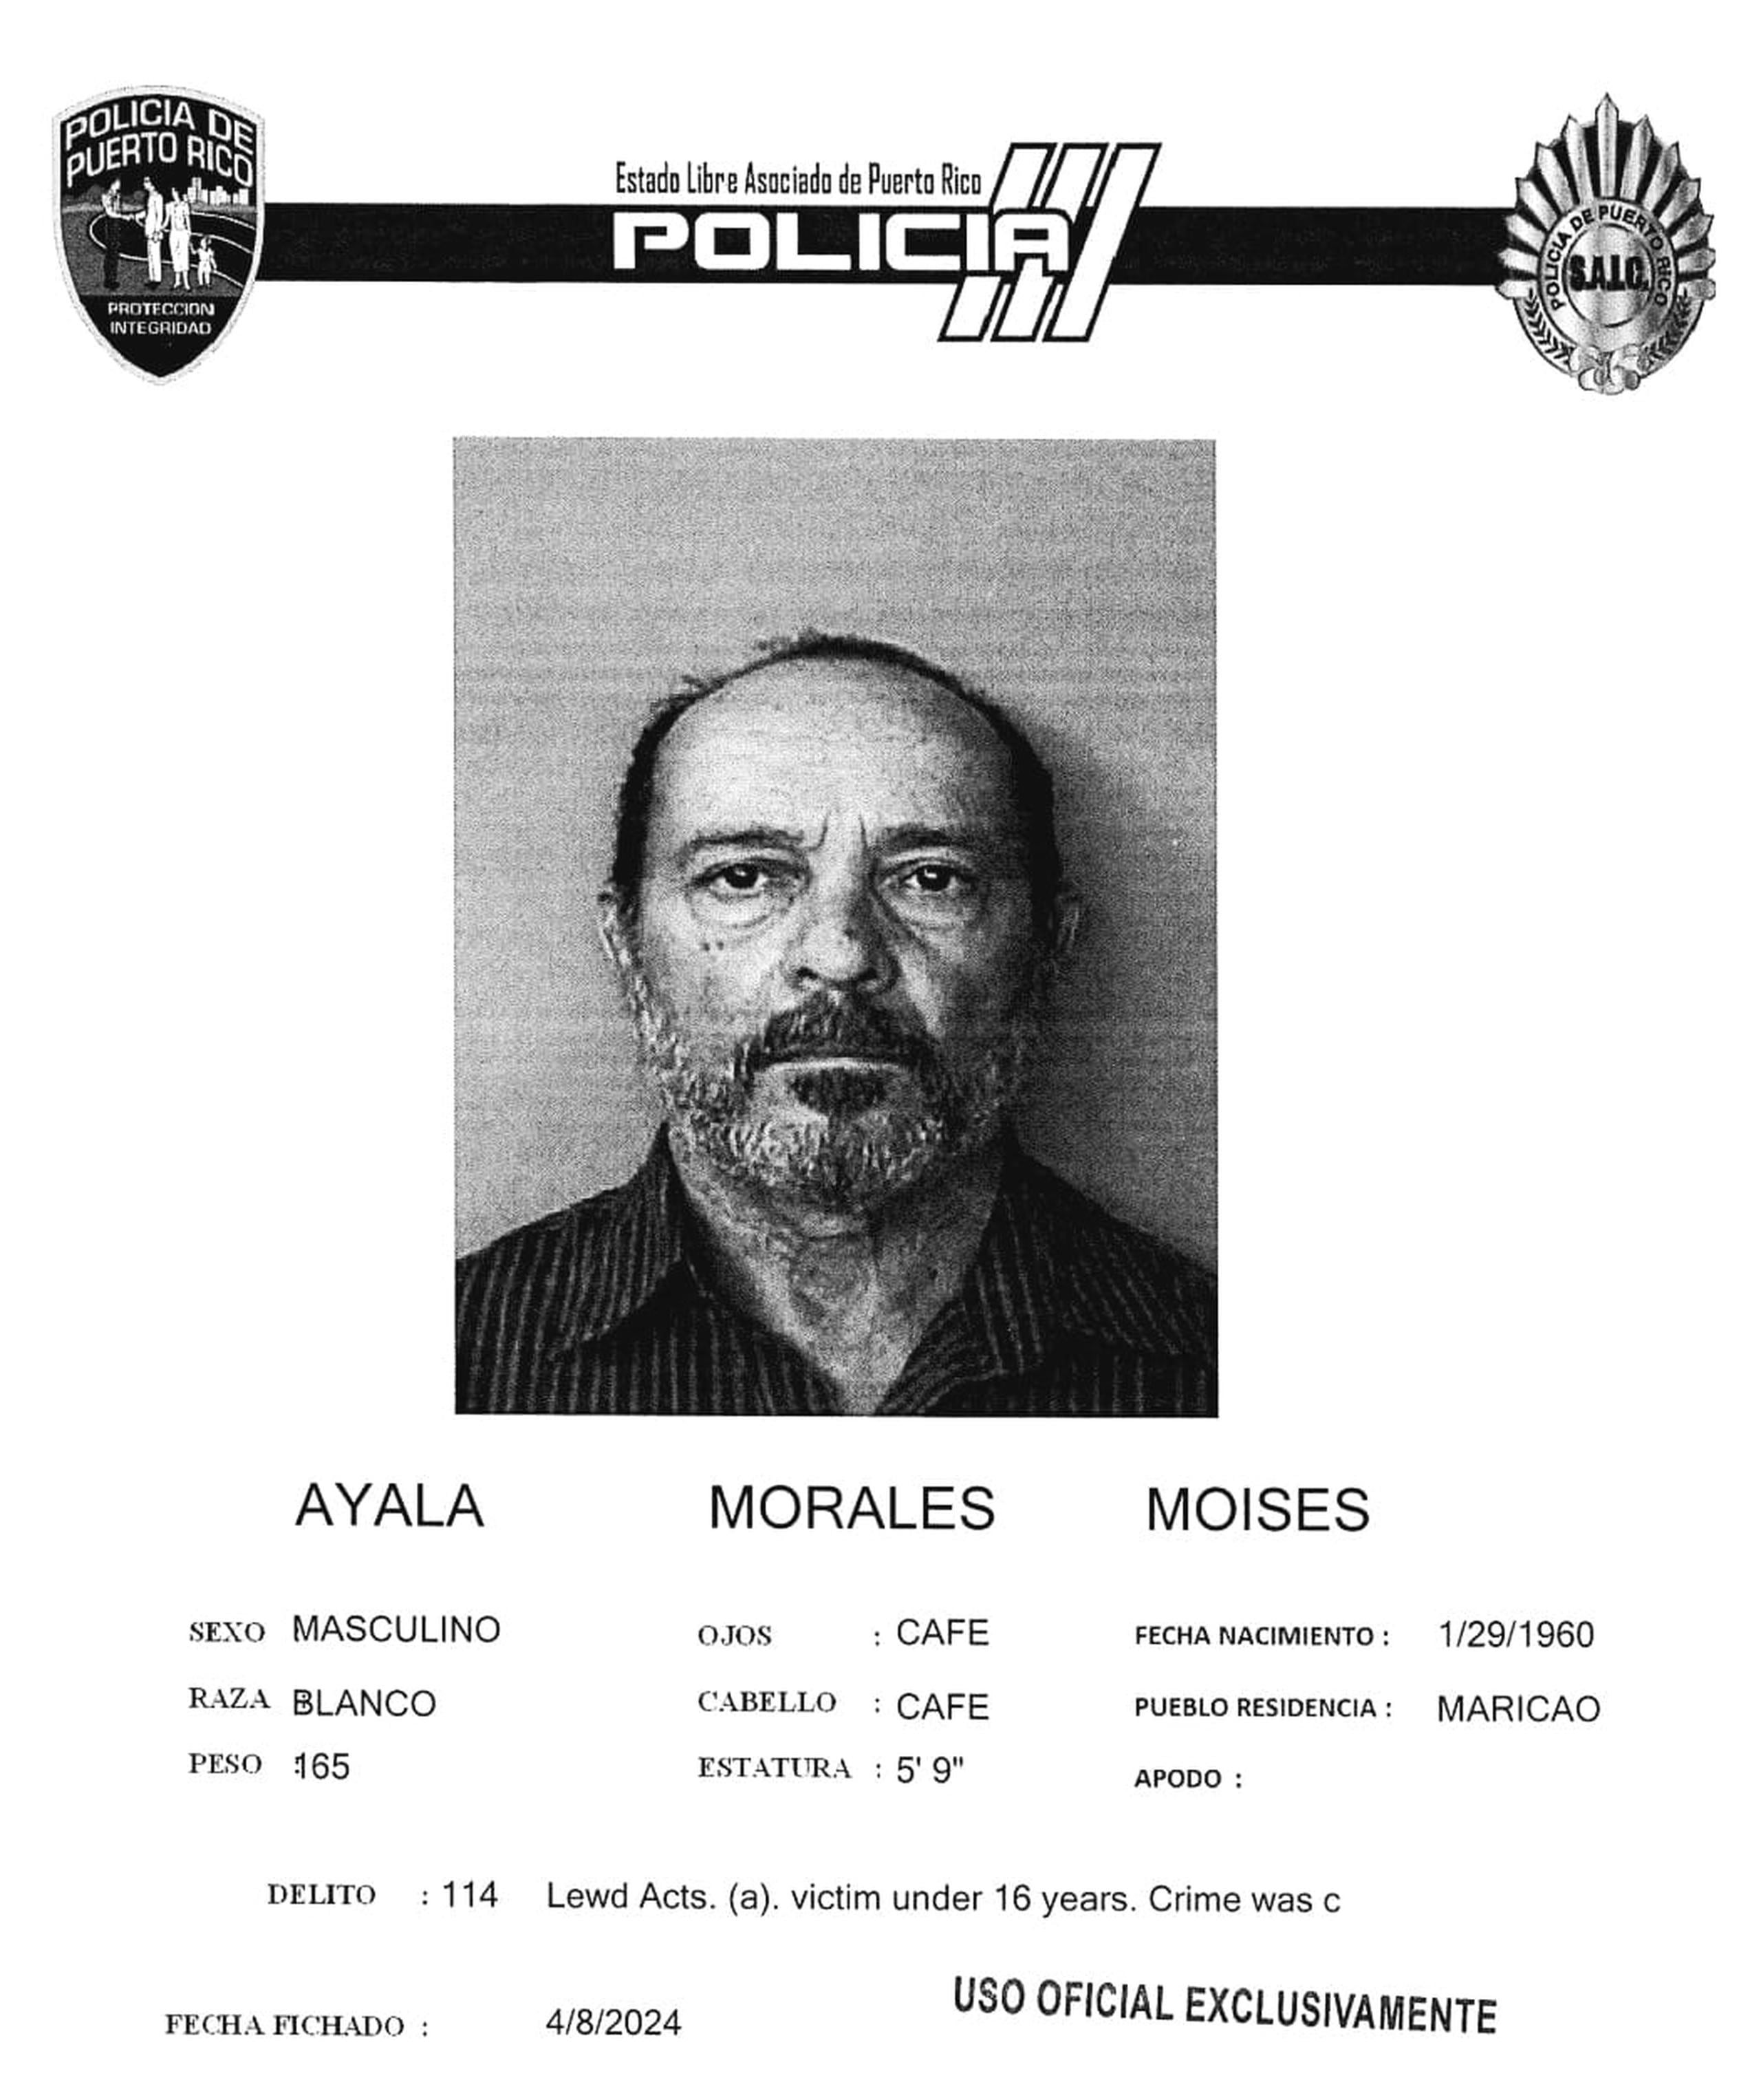 Moisés Ayala Morales enfrenta cargos de actos lascivos y maltrato de menores.